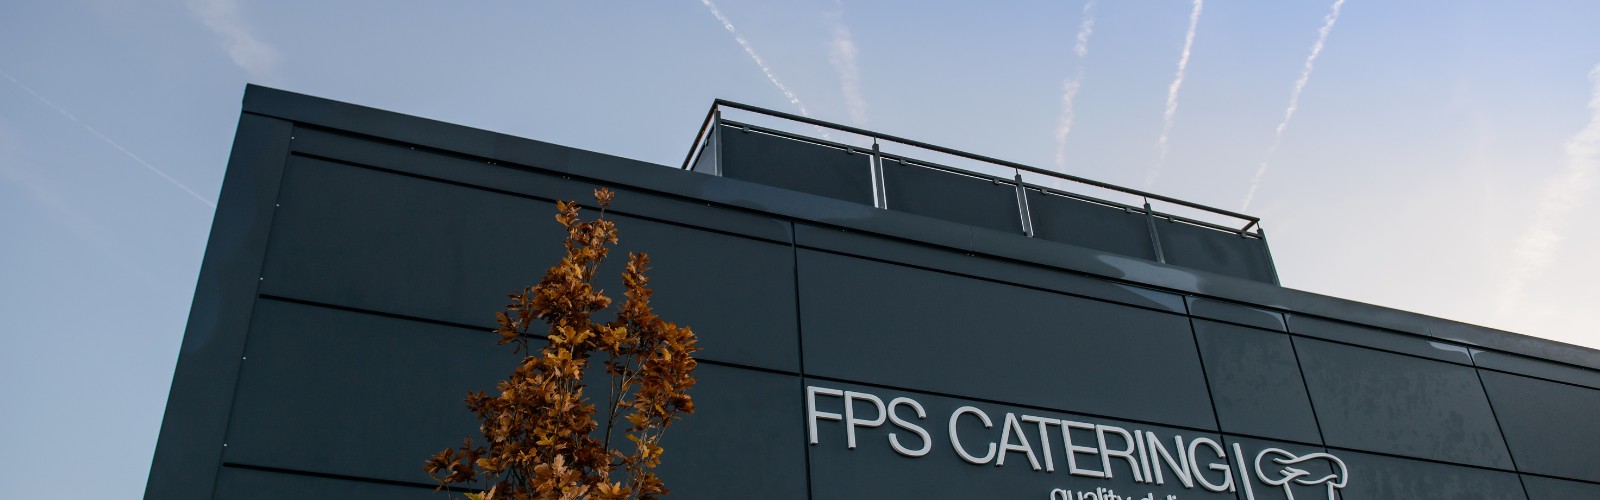 FPS Catering Stellenanzeigen Verwaltung